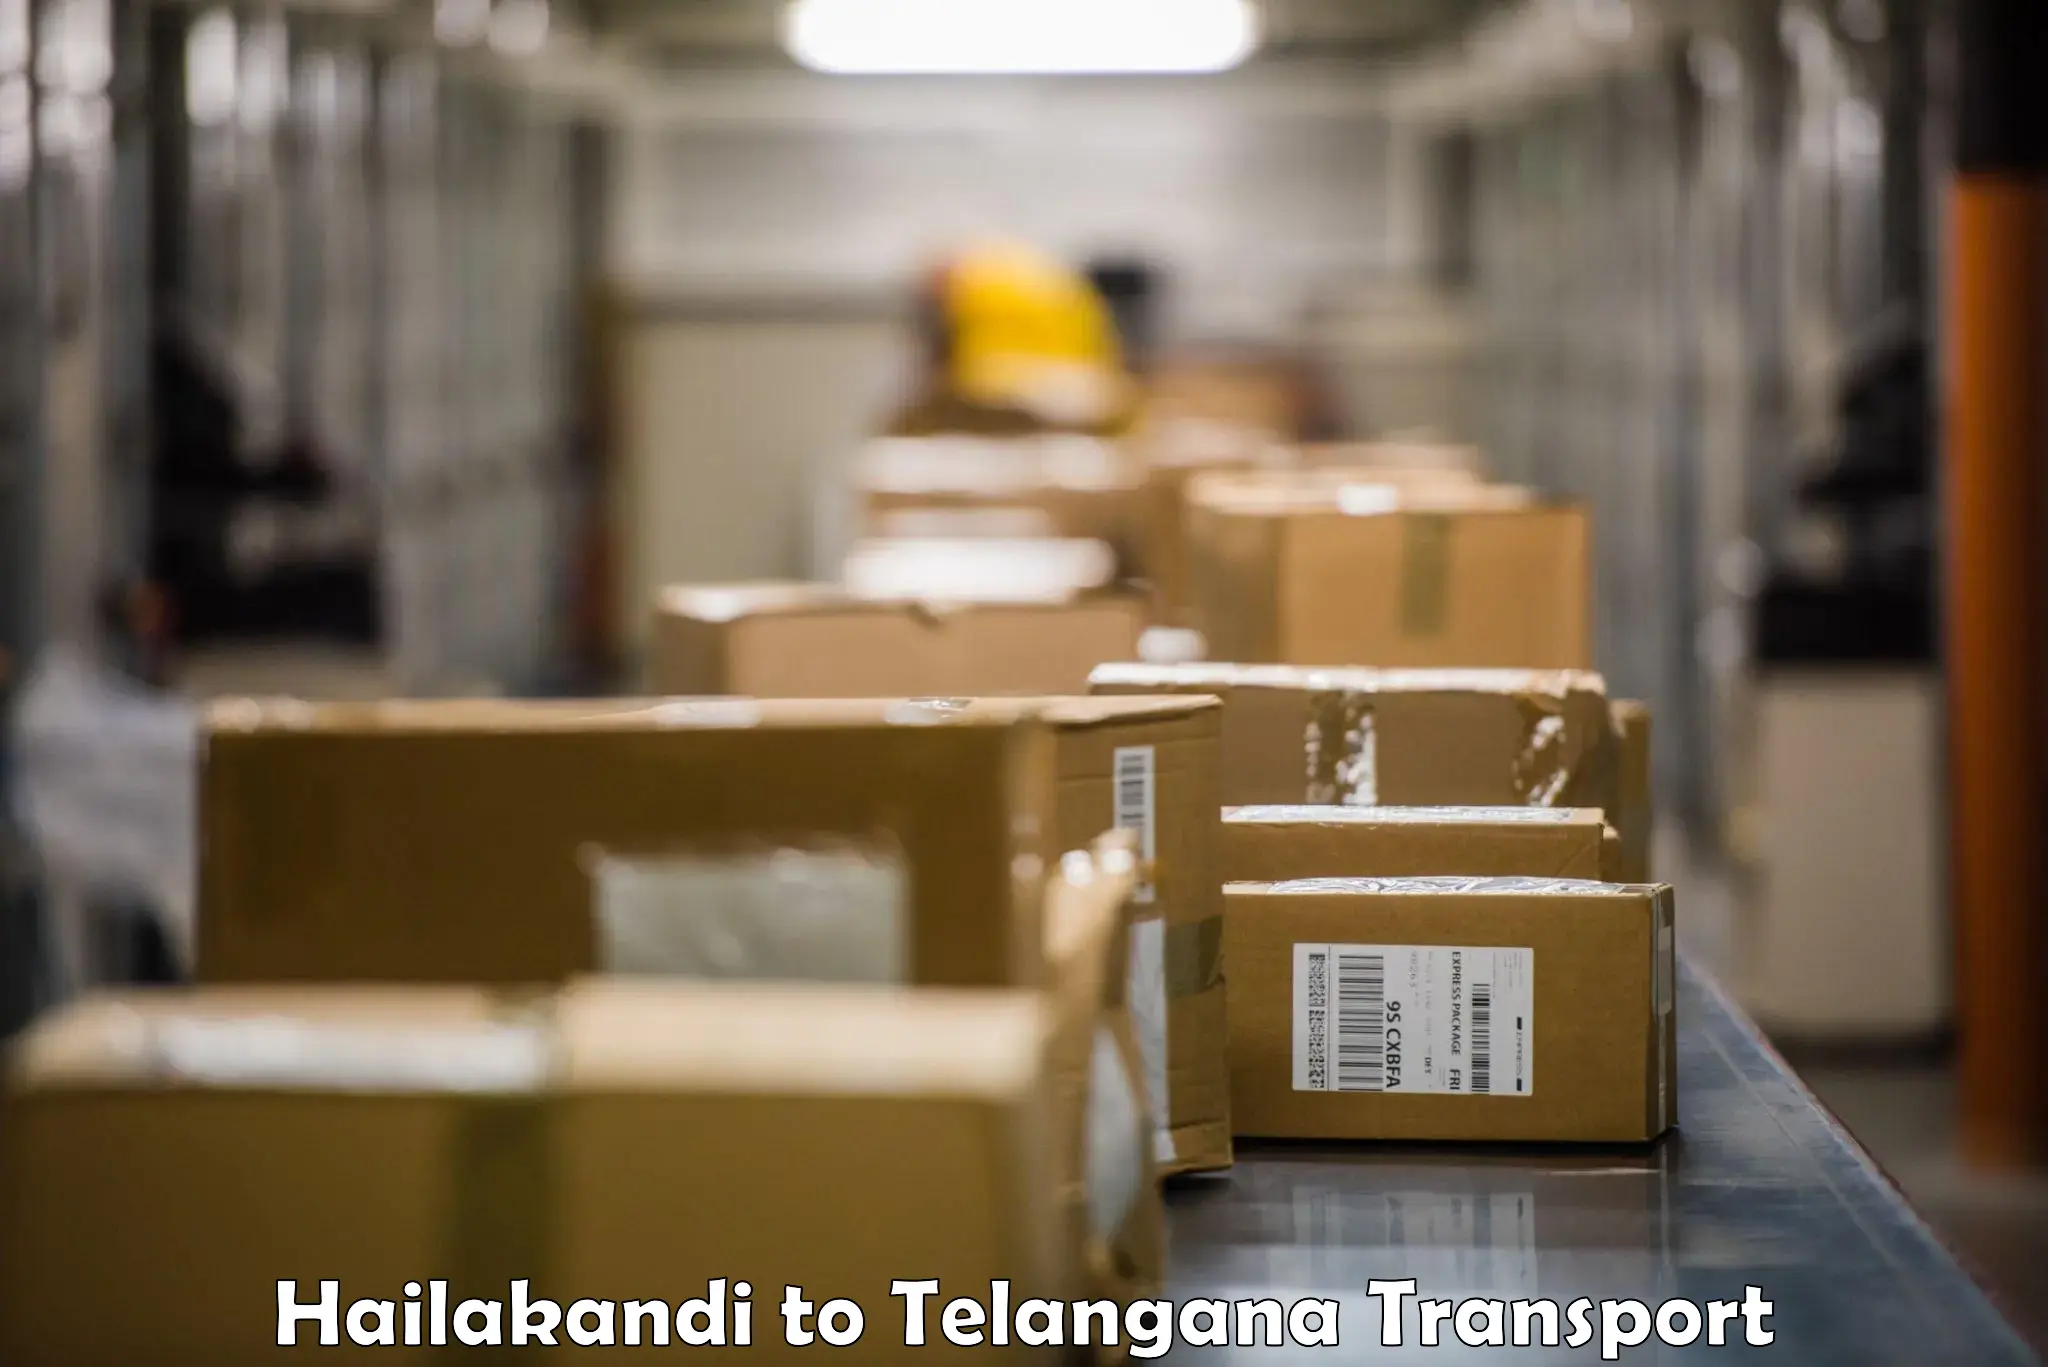 Nearest transport service Hailakandi to Jainoor